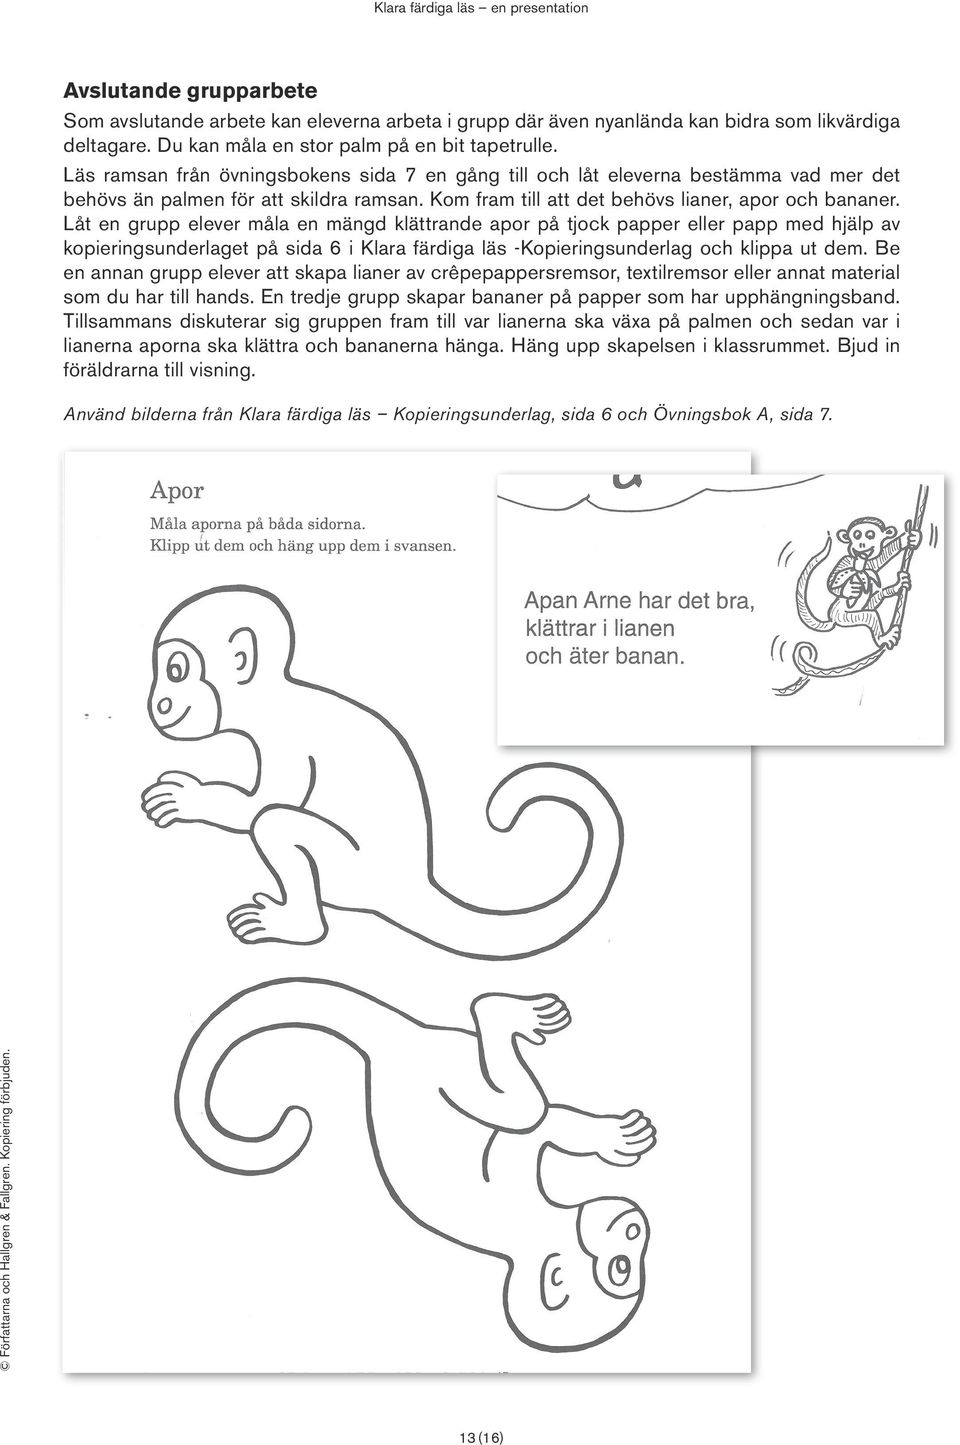 Låt en grupp elever måla en mängd klättrande apor på tjock papper eller papp med hjälp av kopieringsunderlaget på sida 6 i Klara färdiga läs -Kopieringsunderlag och klippa ut dem.